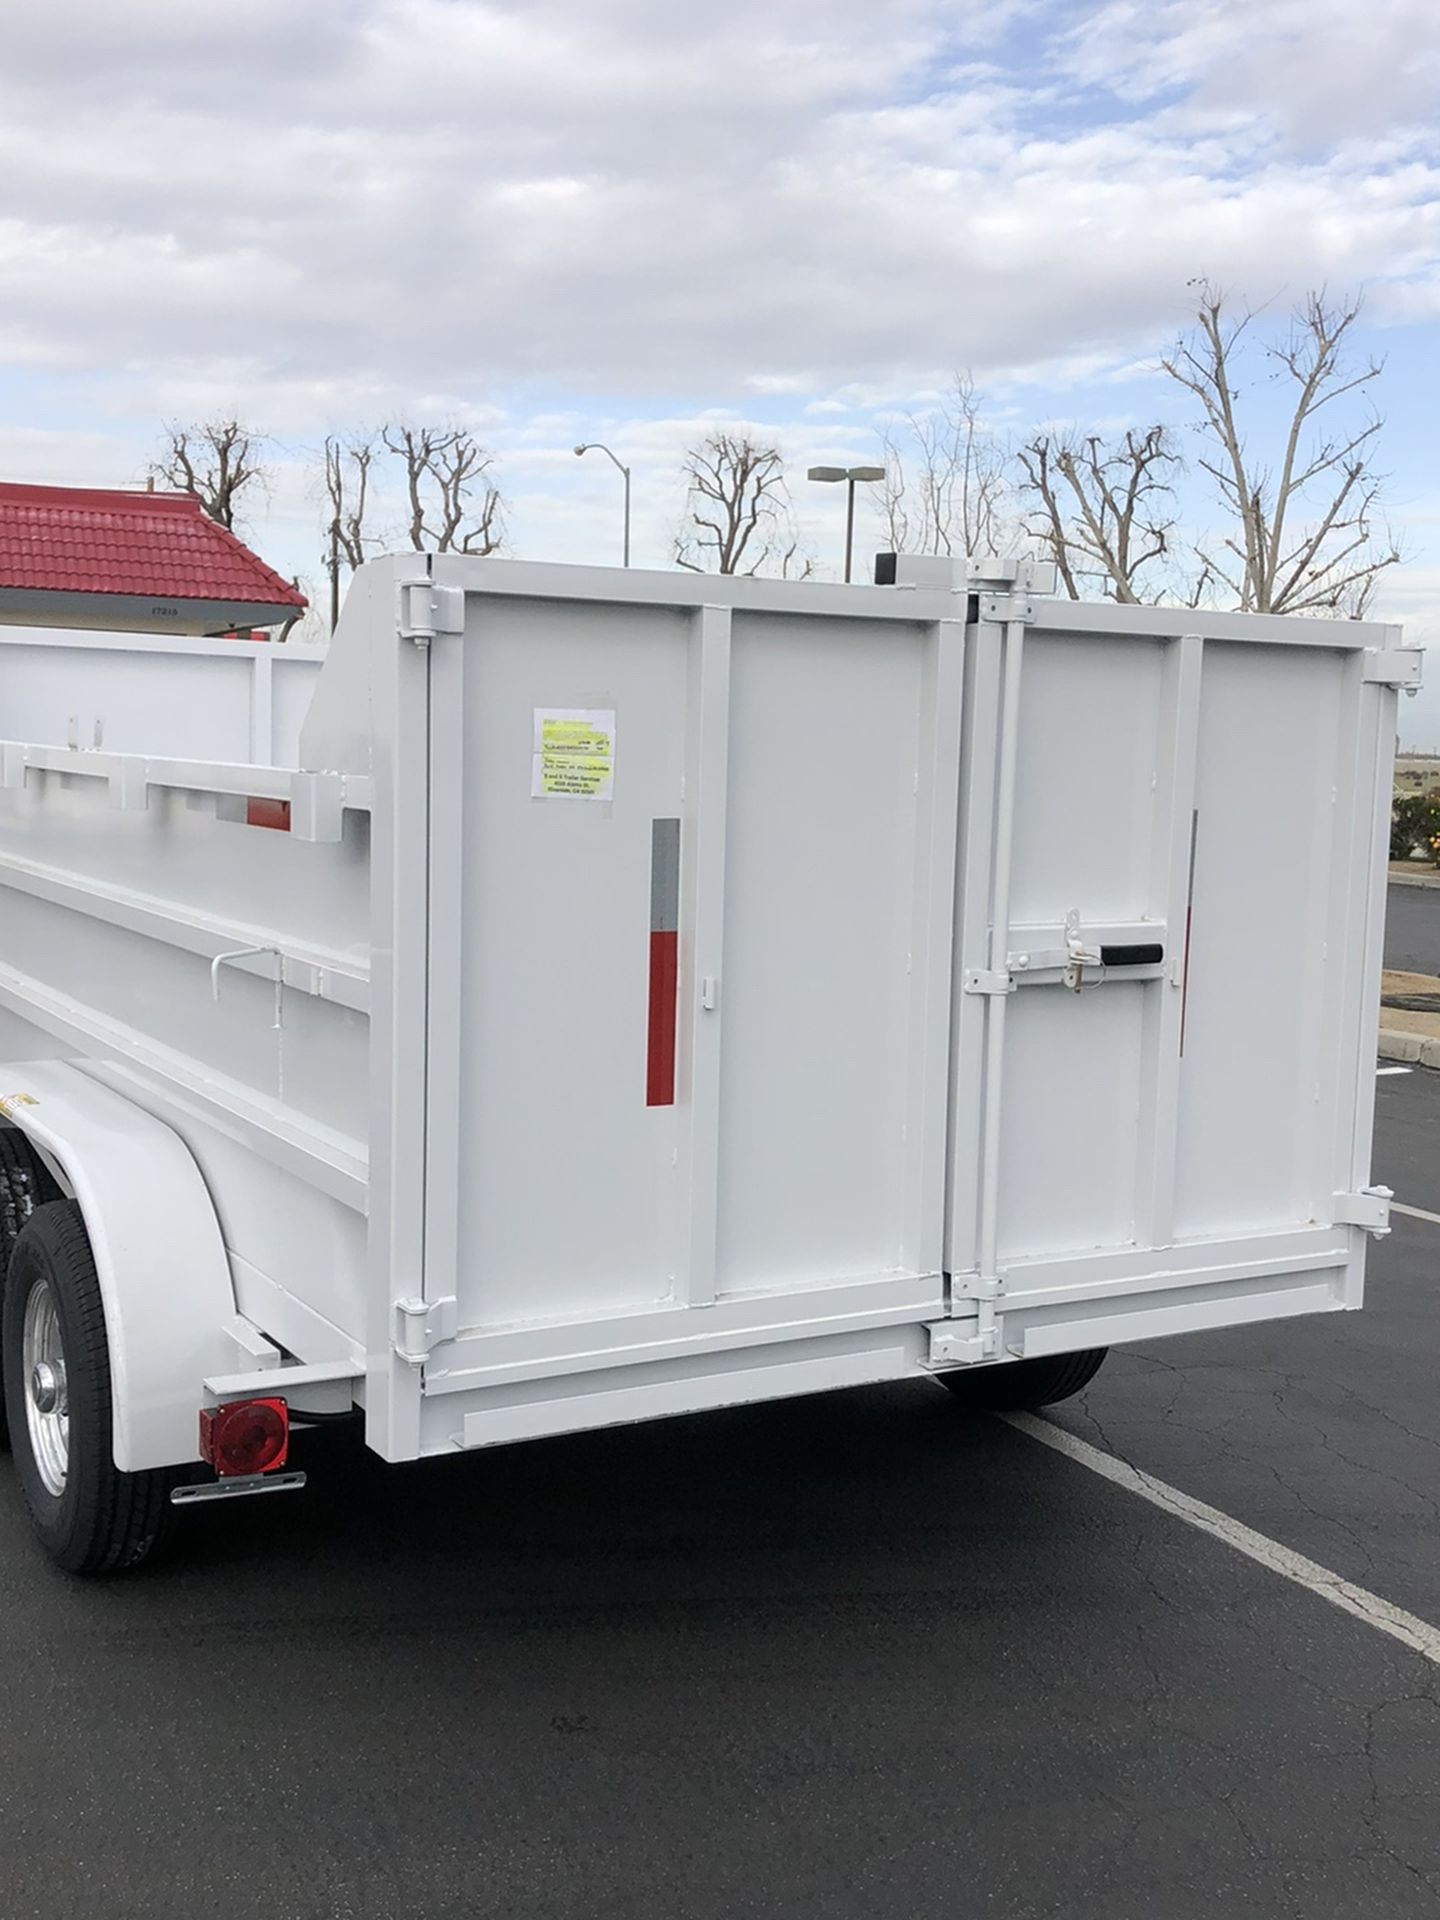 Dump trailer 2021- 12x8x4 doble eje 6000 lbs cada eje (12000) rampas para bodcat ducon freno electrico y de emergencia rines cromados y llantas de 80